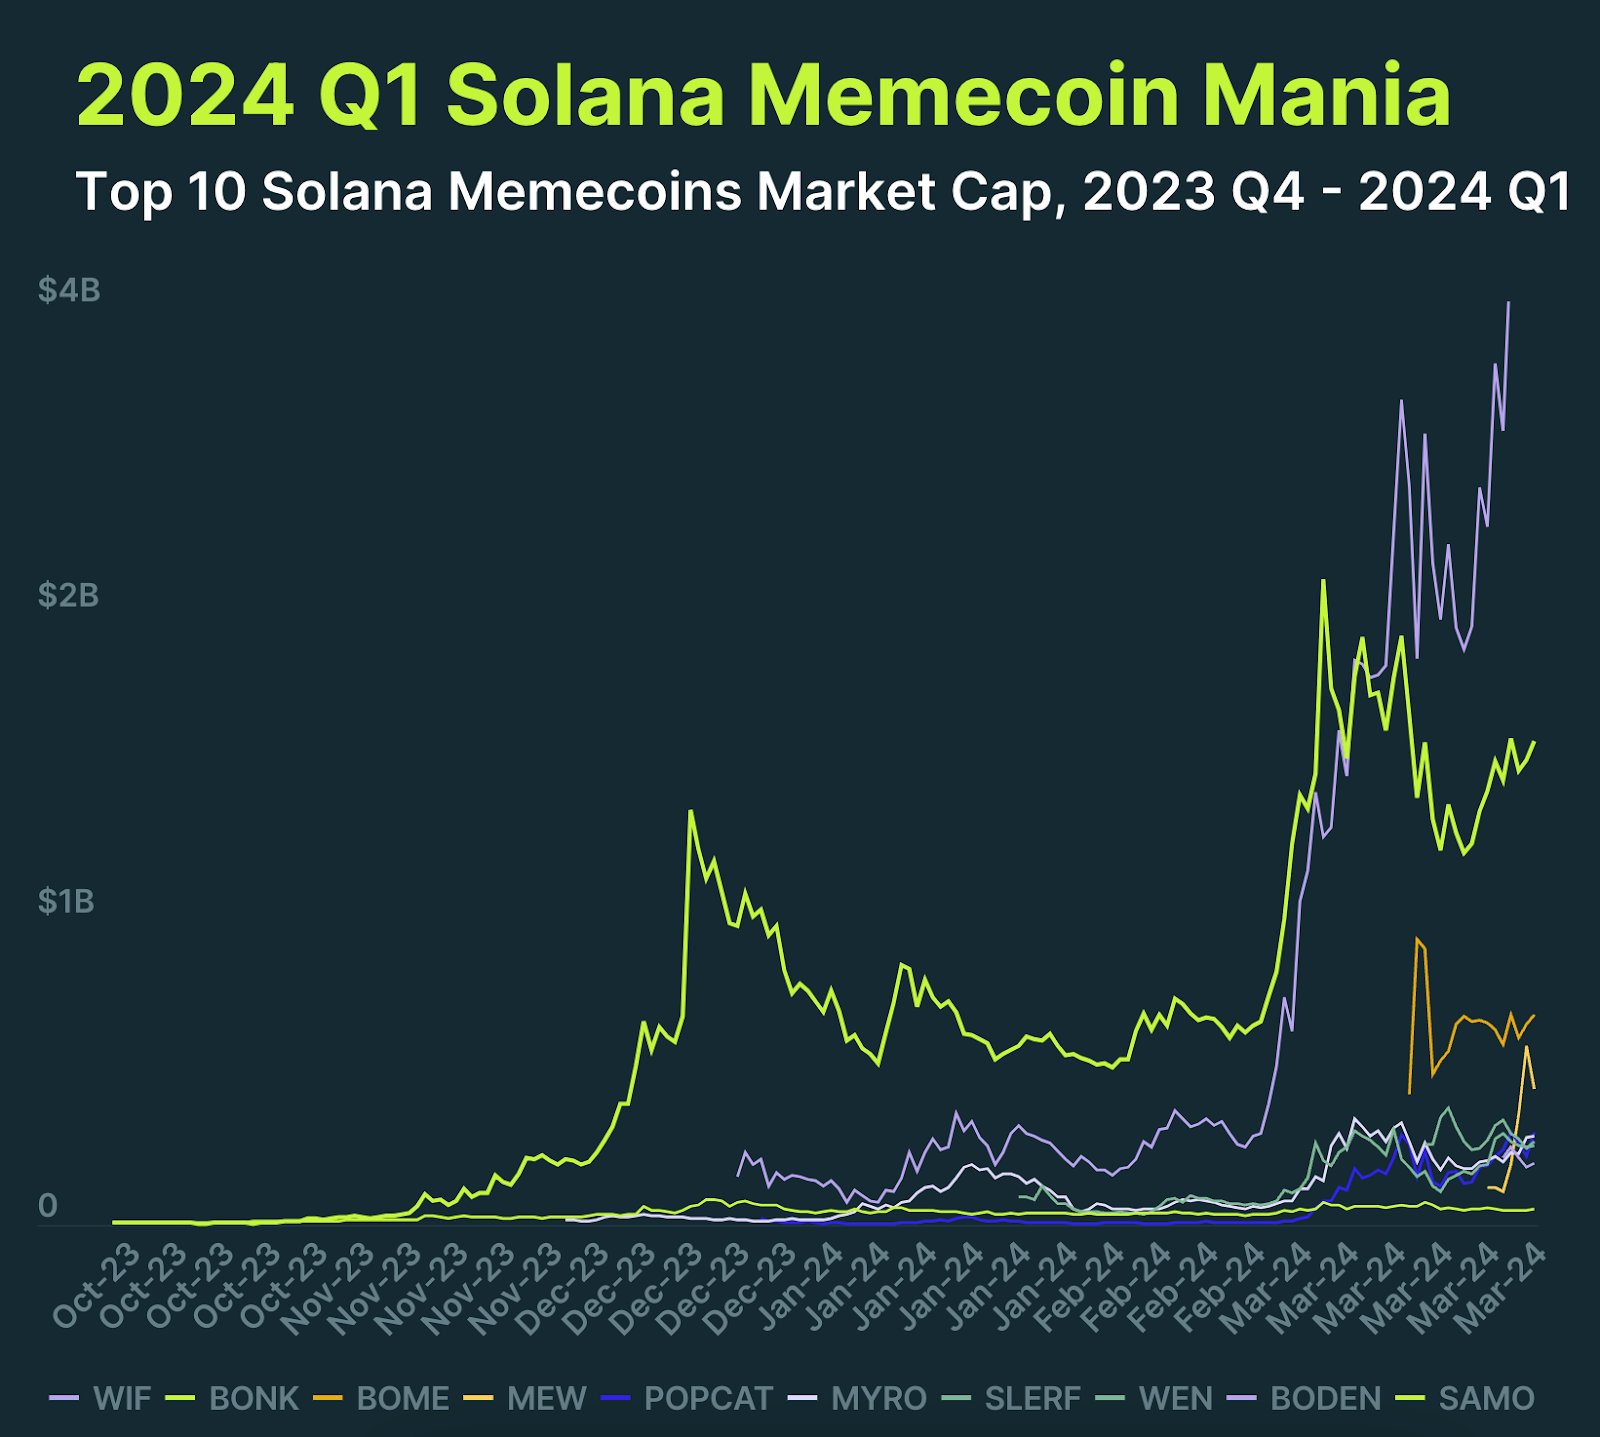 10 найбільших мемкоїнів у мережі Solana за ринковою капіталізацією. Дані: Coingecko.